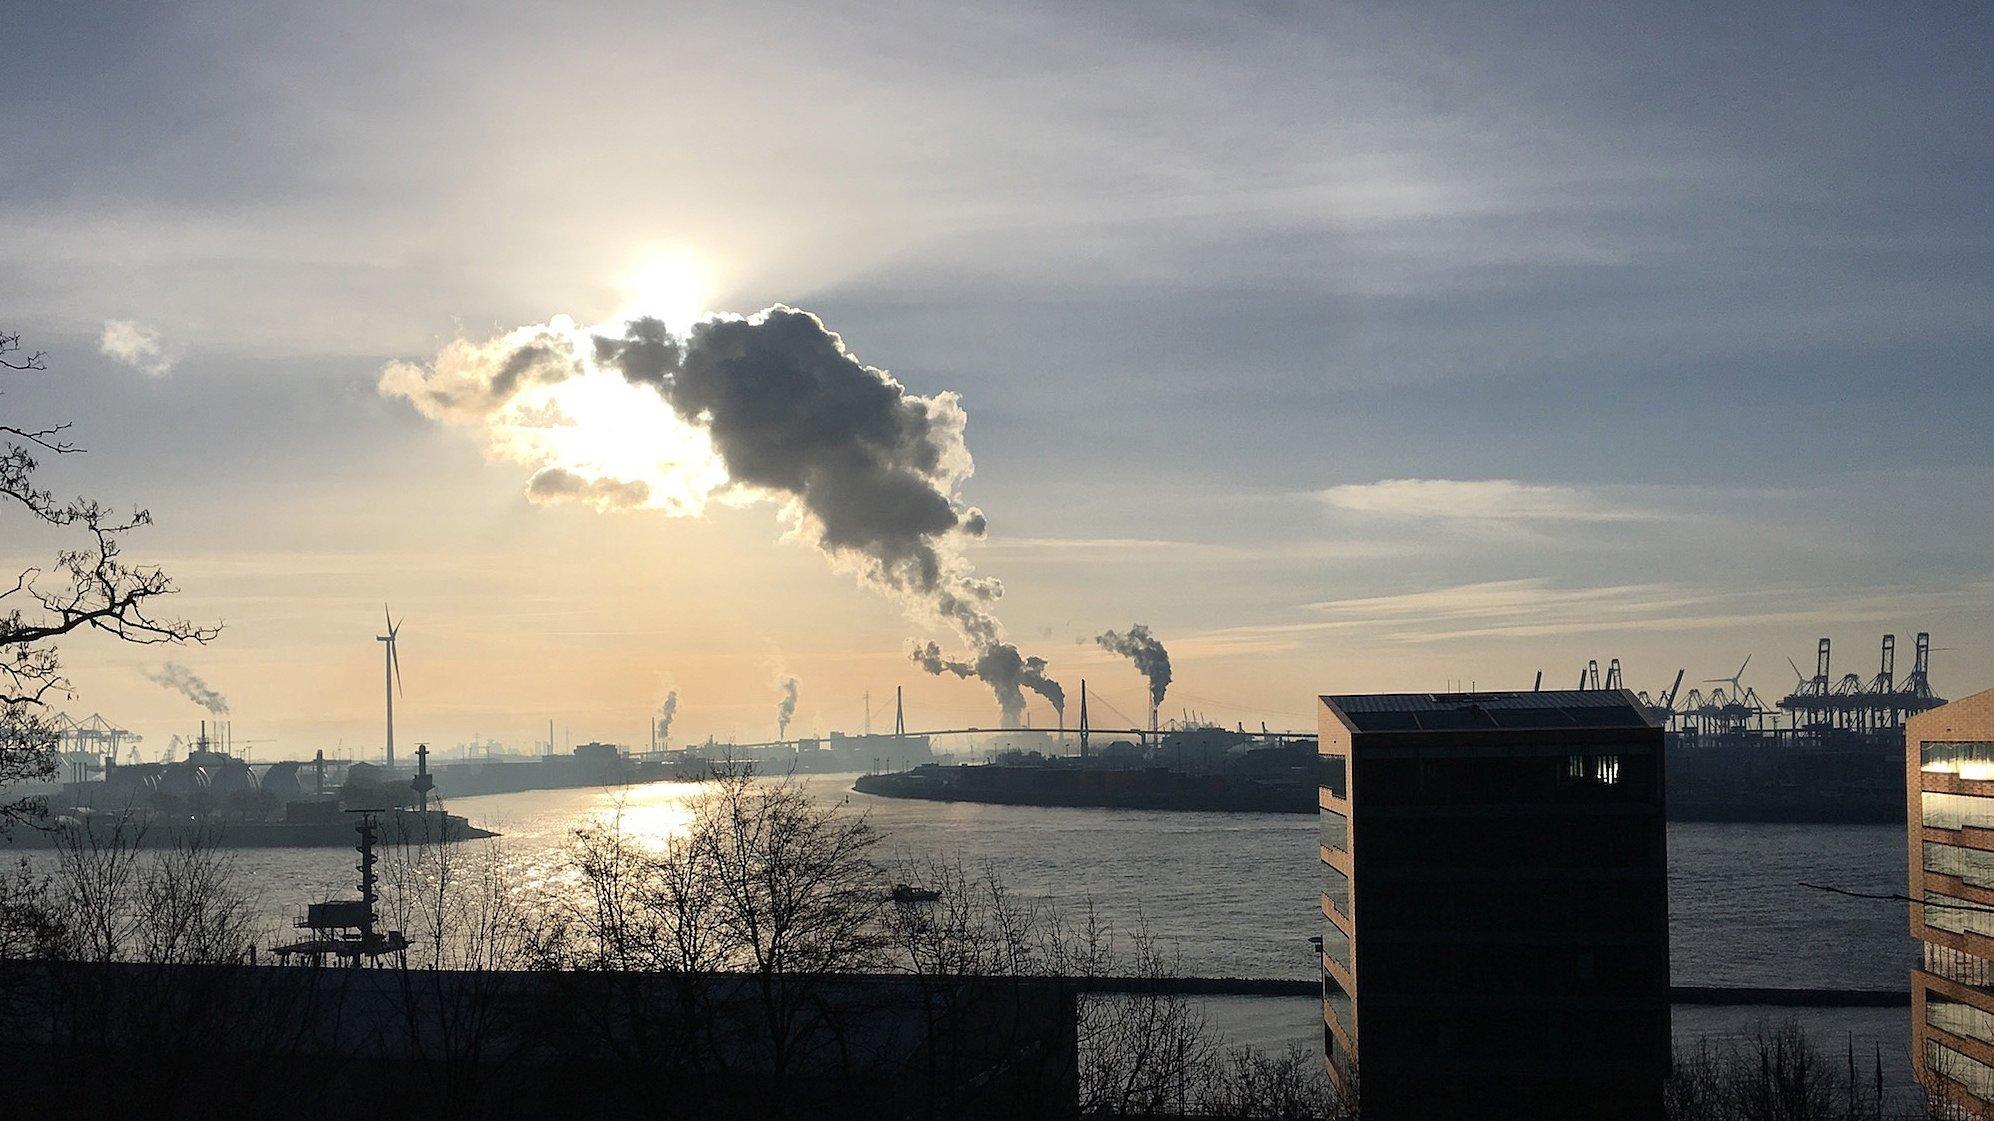 Bild vom Hamburger Elbufer im Stadtteil Altona: 
Vom Hochufer in Hamburg-Altona geht der Blick über die Elbe nach Süden. Dort hinter der Köhlbrandbrücke sind etliche Industriebetriebe angesiedelt, unter anderem das Kohlekraftwerk Moorburg. Die sichtbaren Wolken sind nur Wasserdampf, aber aus den gleichen Schornsteinen entweicht auch eine große Menge CO2.